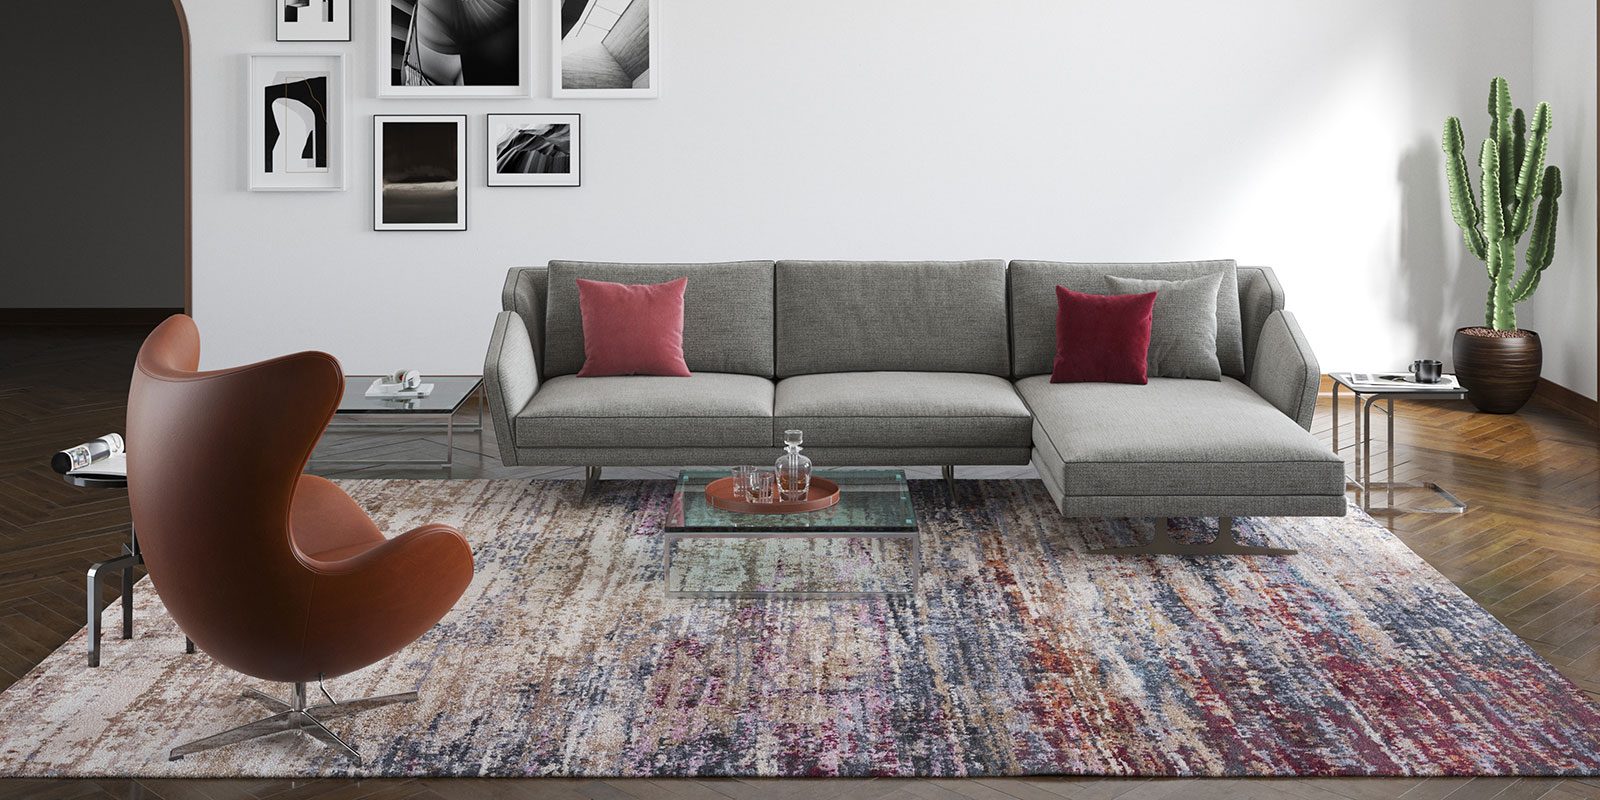 Modernes Wohnzimmer mit grauer L-förmiger Couch mit roten Kissen, braunem Ei-Sessel, gemustertem Teppich, Glastisch und Dekopflanze. Helle Wände mit Schwarz-Weiß-Fotografien. Dunkler Holzboden.